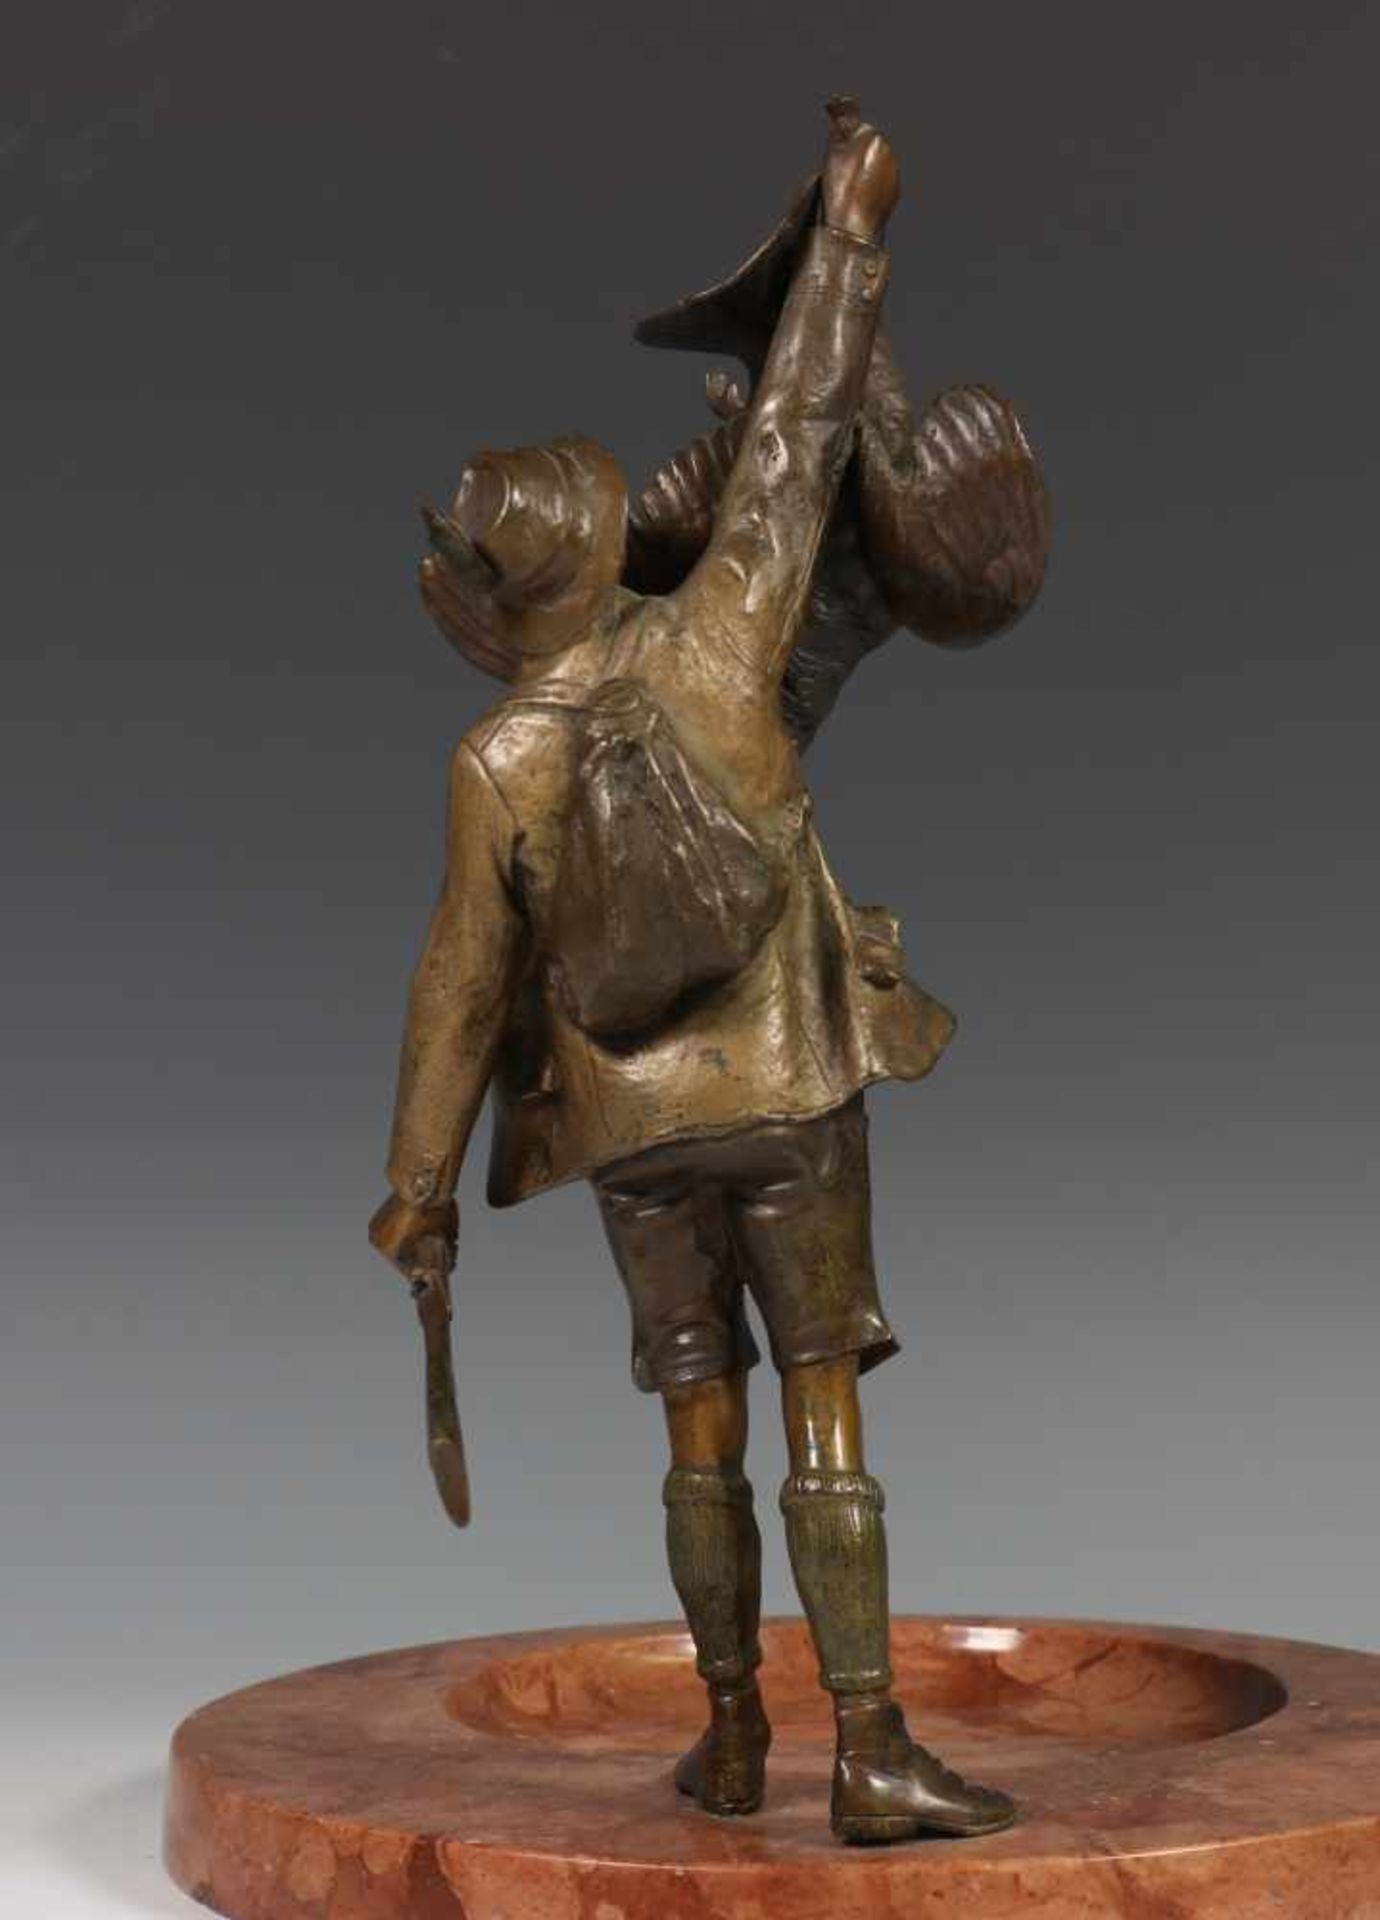 Rood marmeren vide-poche,met bronzen sculptuur van jager met geschoten wild (geweer beschadigd), - Bild 3 aus 3